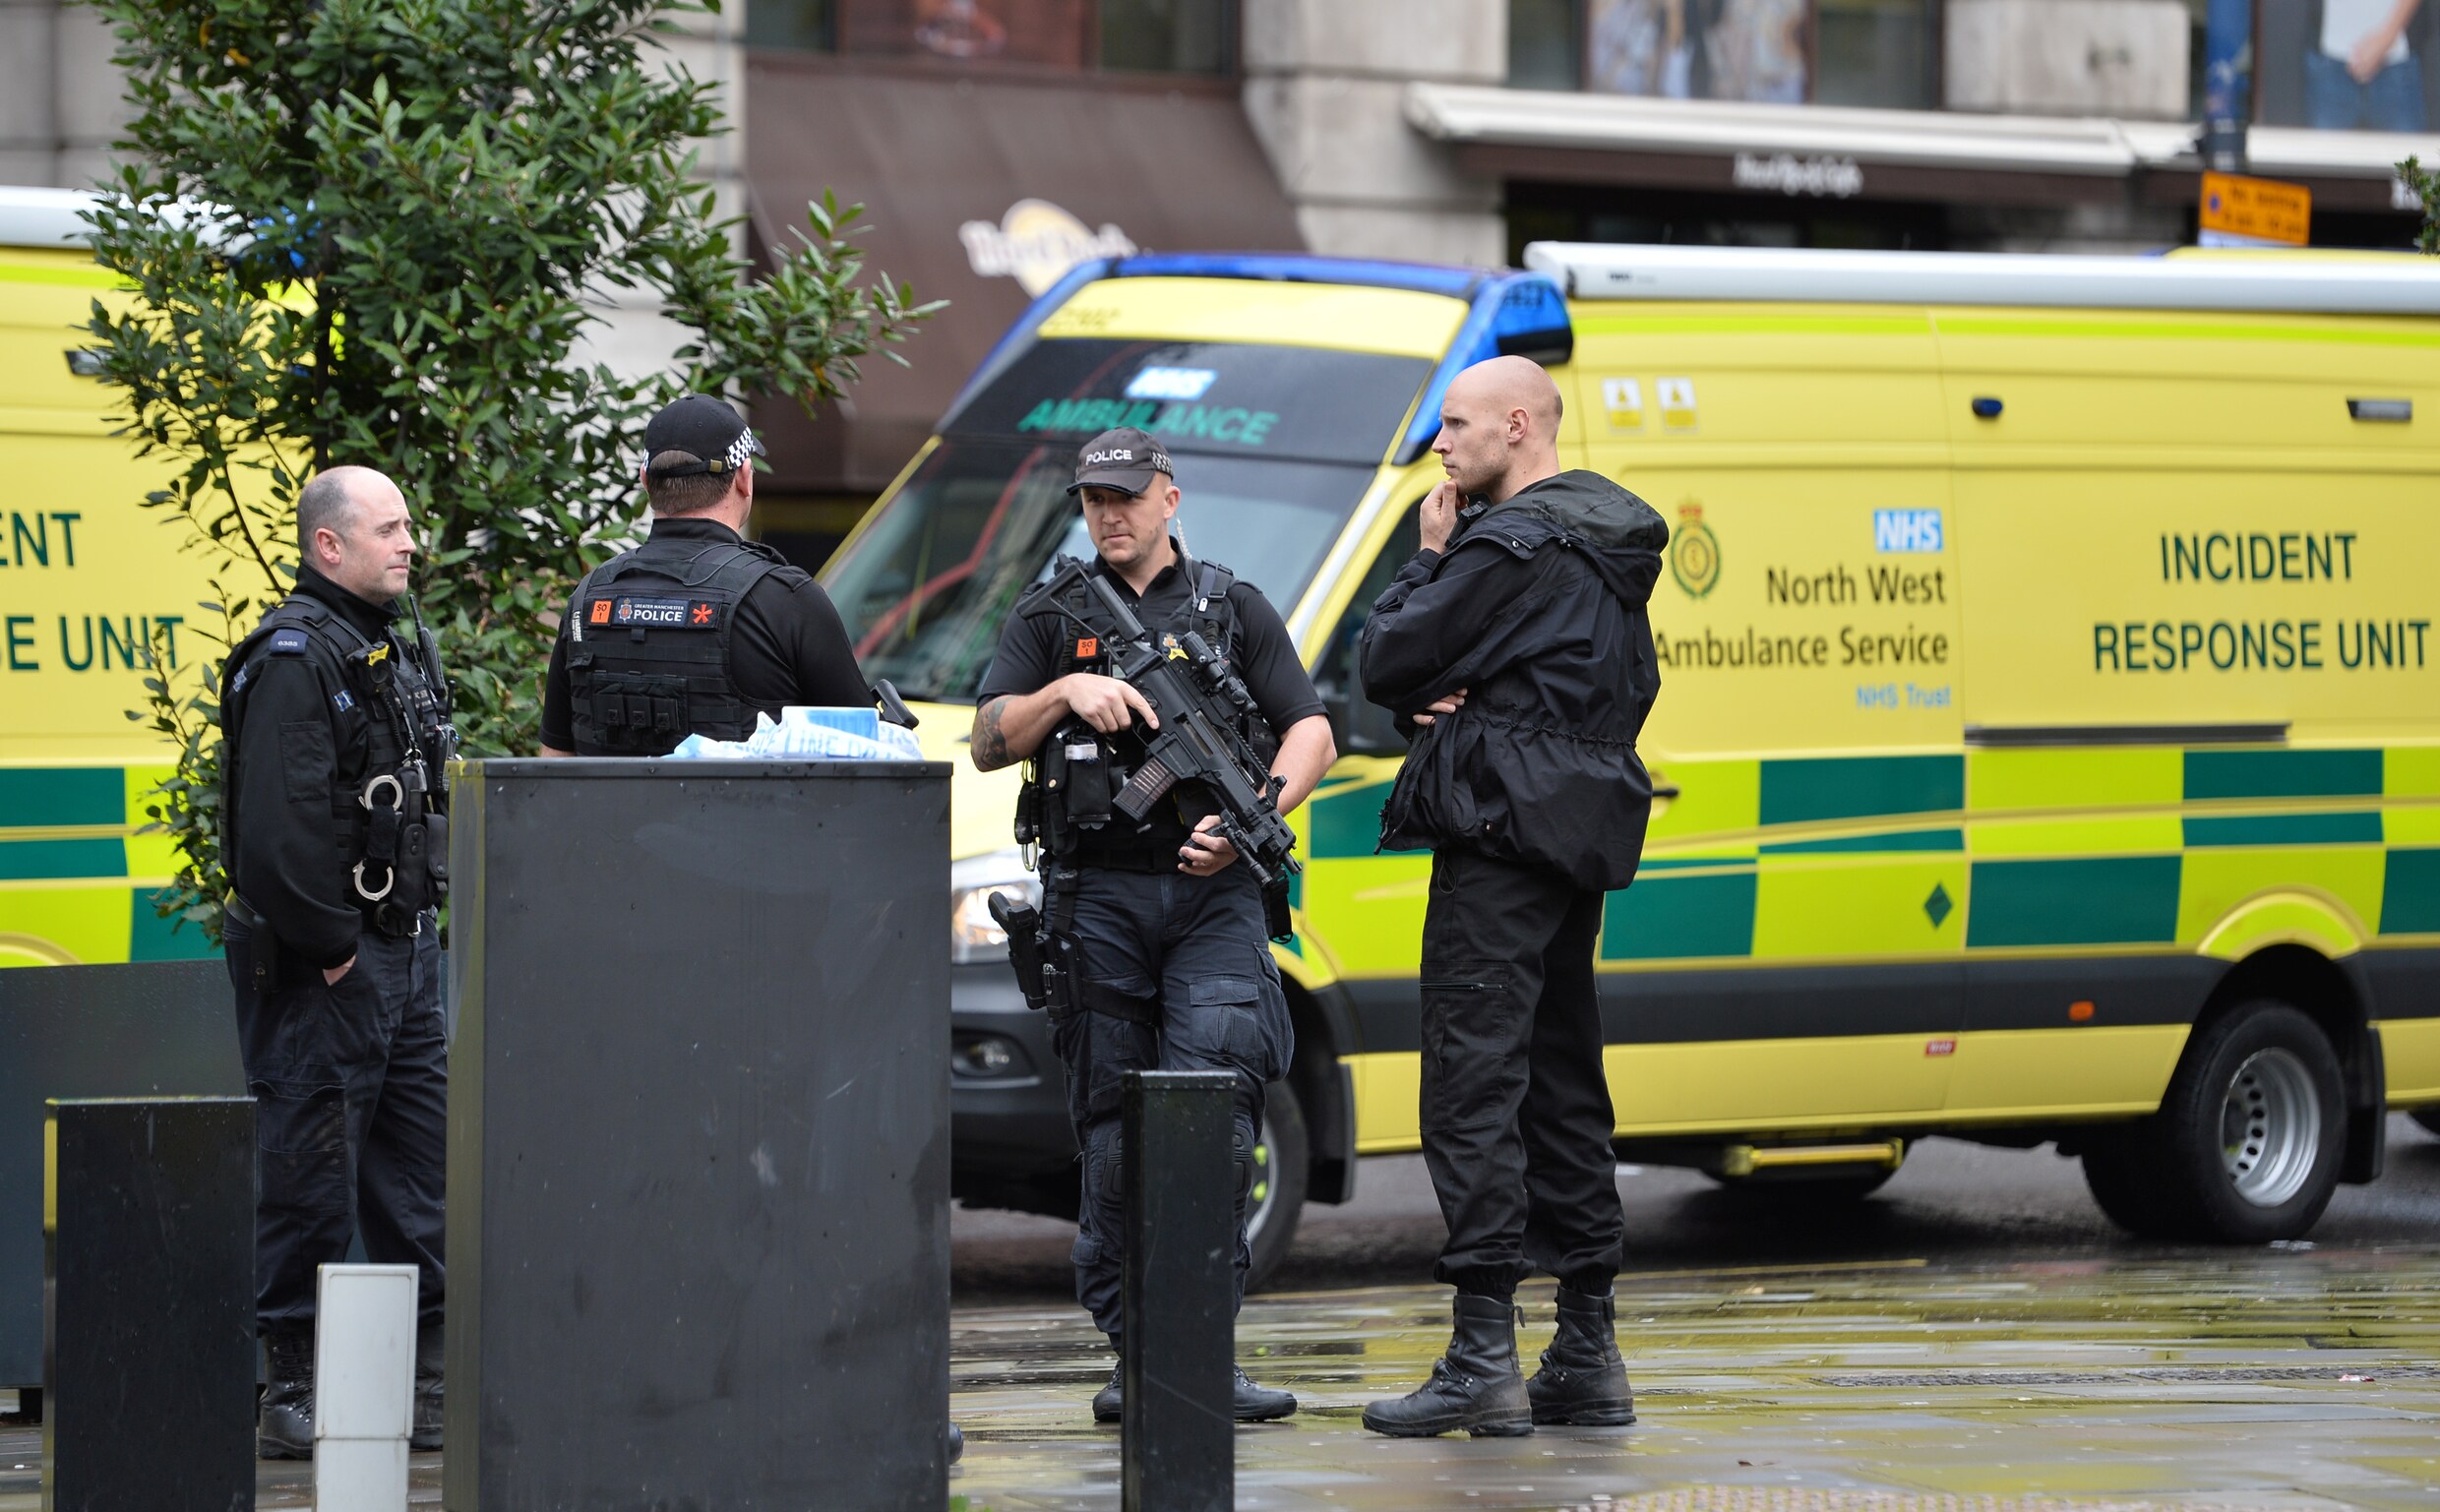 Steekpartij in winkelcentrum in Manchester: vijf gewonden, verdachte aangehouden voor terrorisme